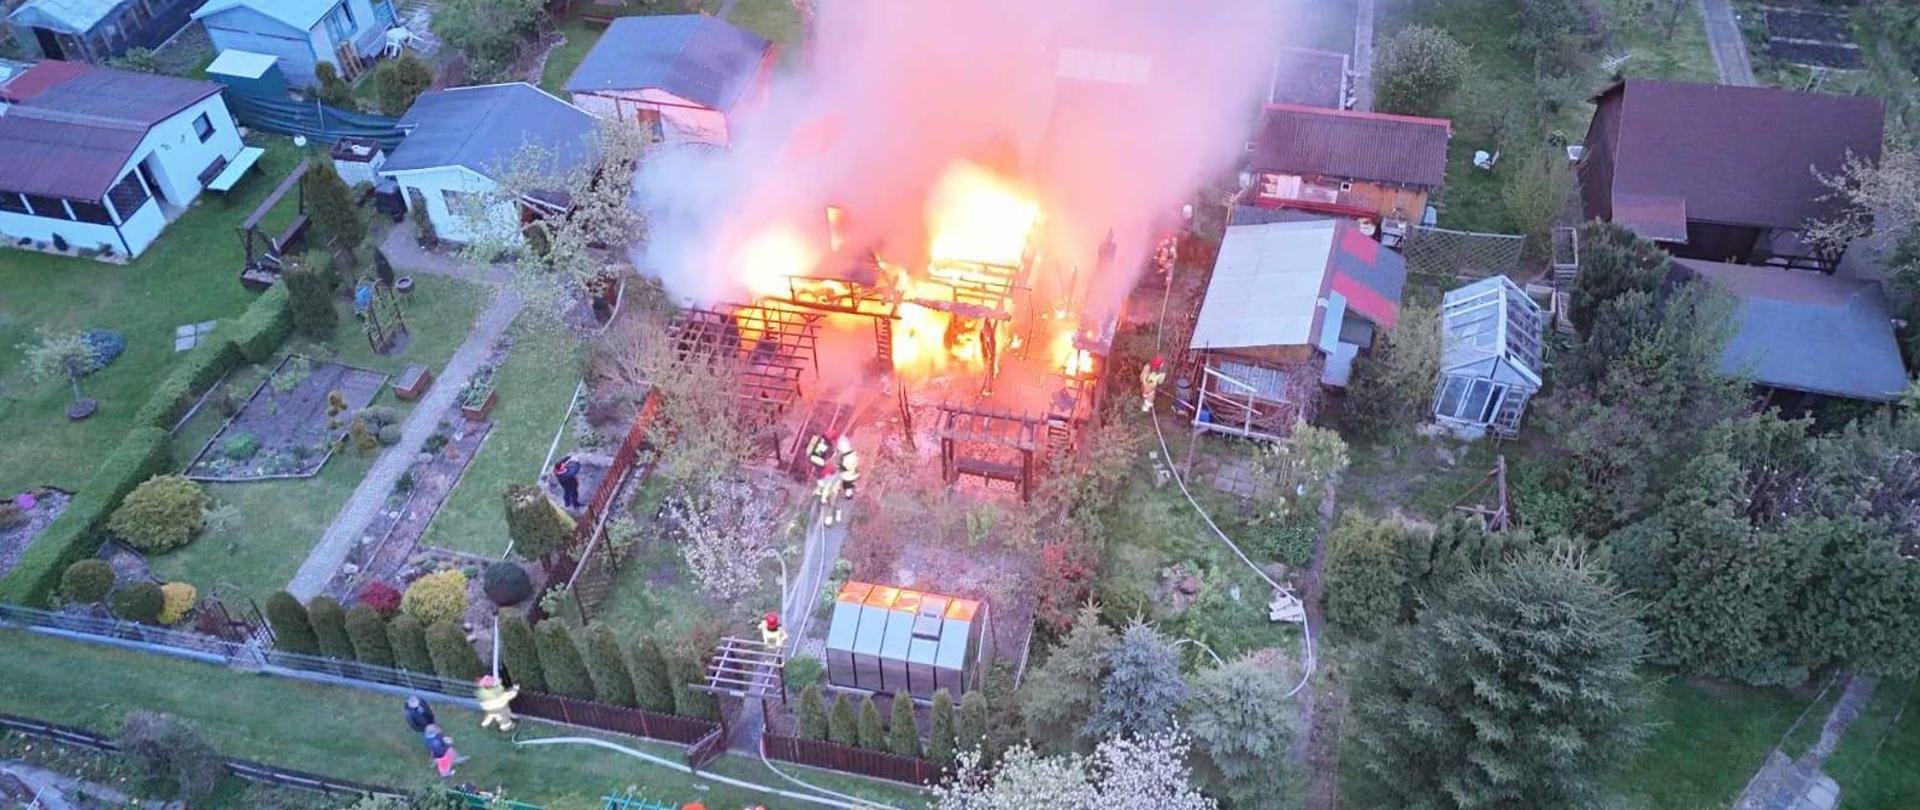 Widok z drona na palącą się altanę oraz akcję gaśniczą strażaków.